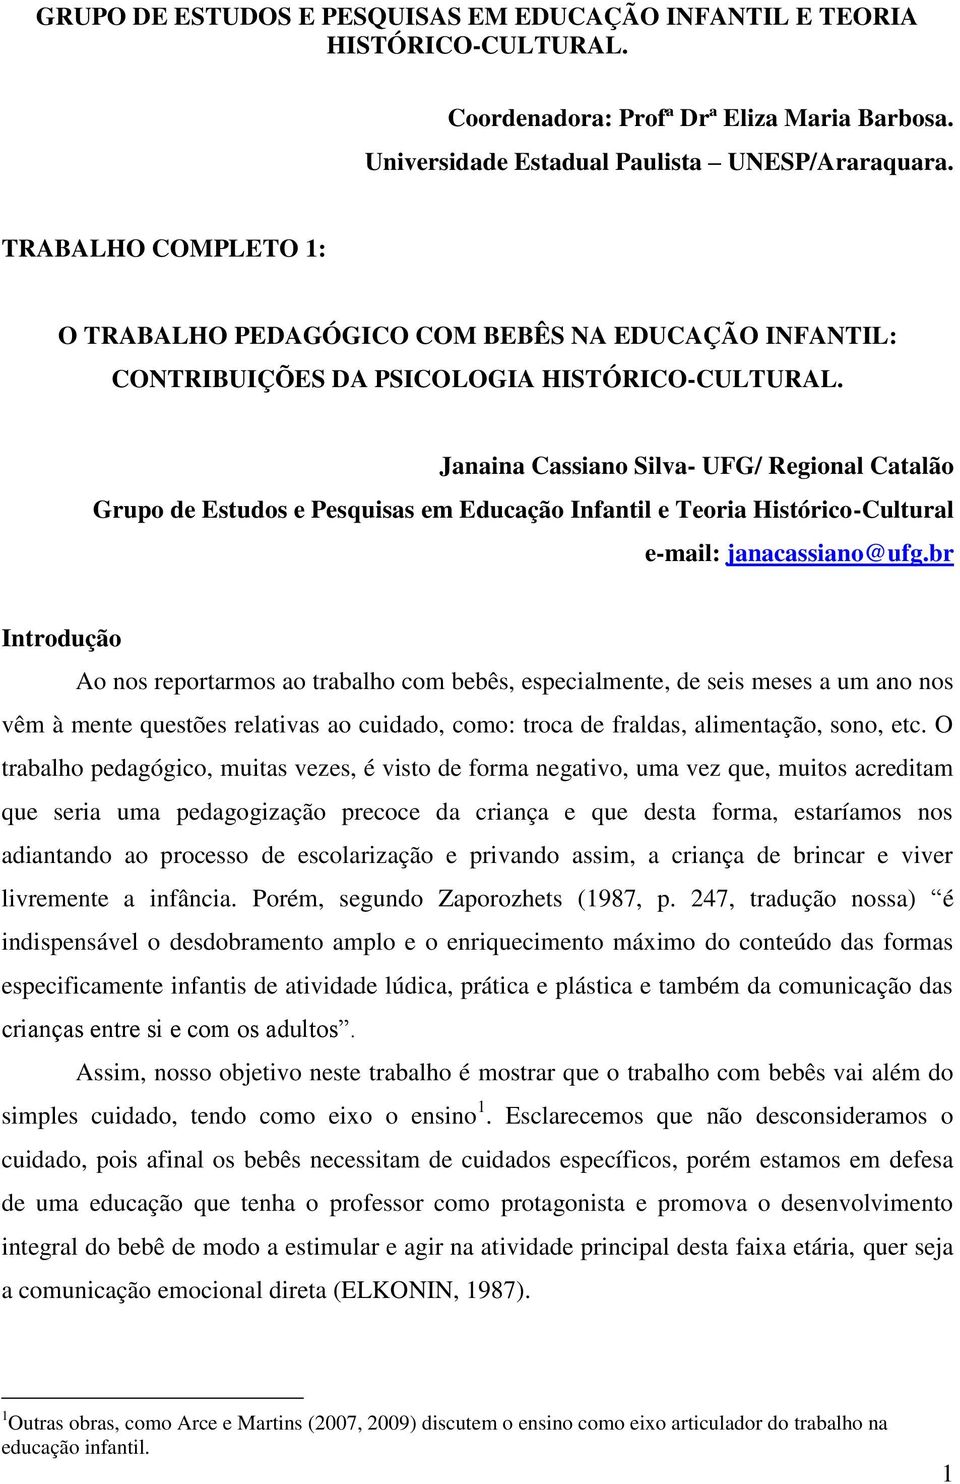 Janaina Cassiano Silva- UFG/ Regional Catalão Grupo de Estudos e Pesquisas em Educação Infantil e Teoria Histórico-Cultural e-mail: janacassiano@ufg.